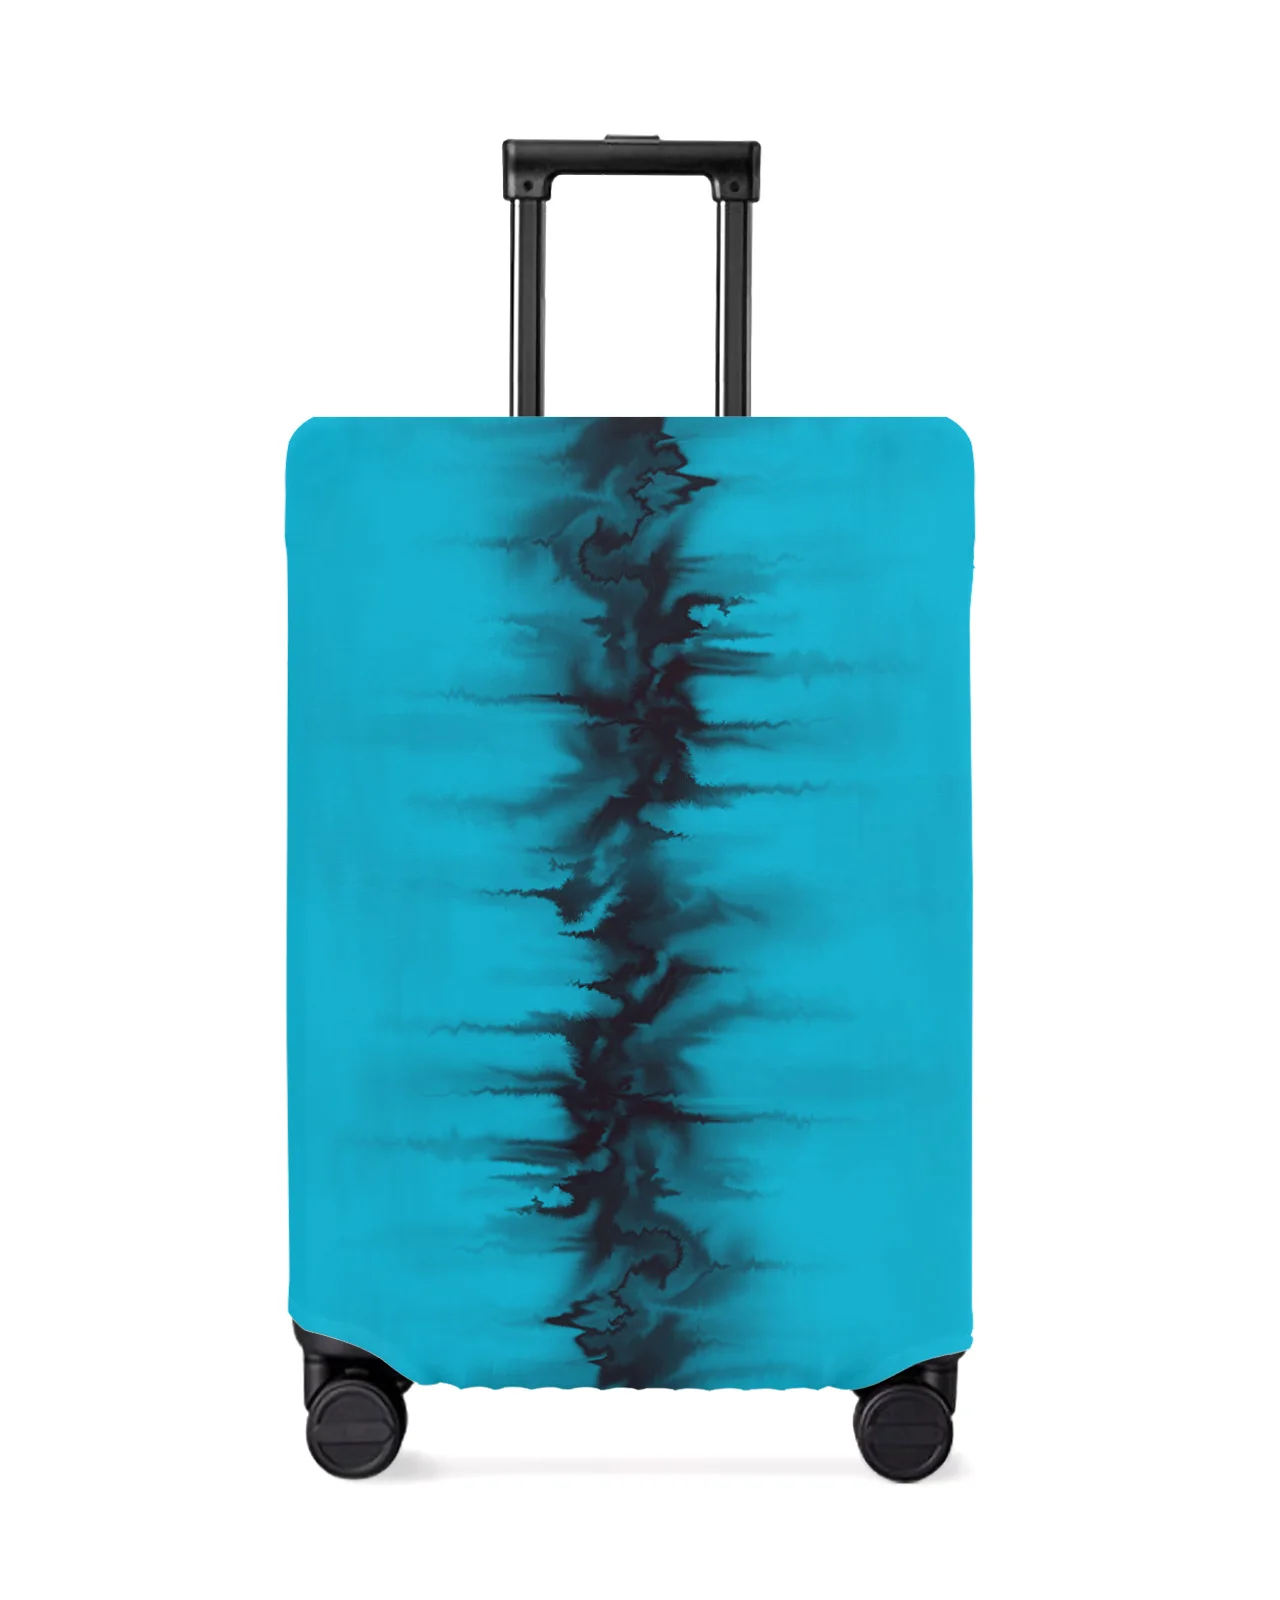 juste-de-bagage-pour-valise-de-voyage-housse-de-protection-etui-anti-poussiere-bleu-encre-abstrait-noir-18-32-pouces